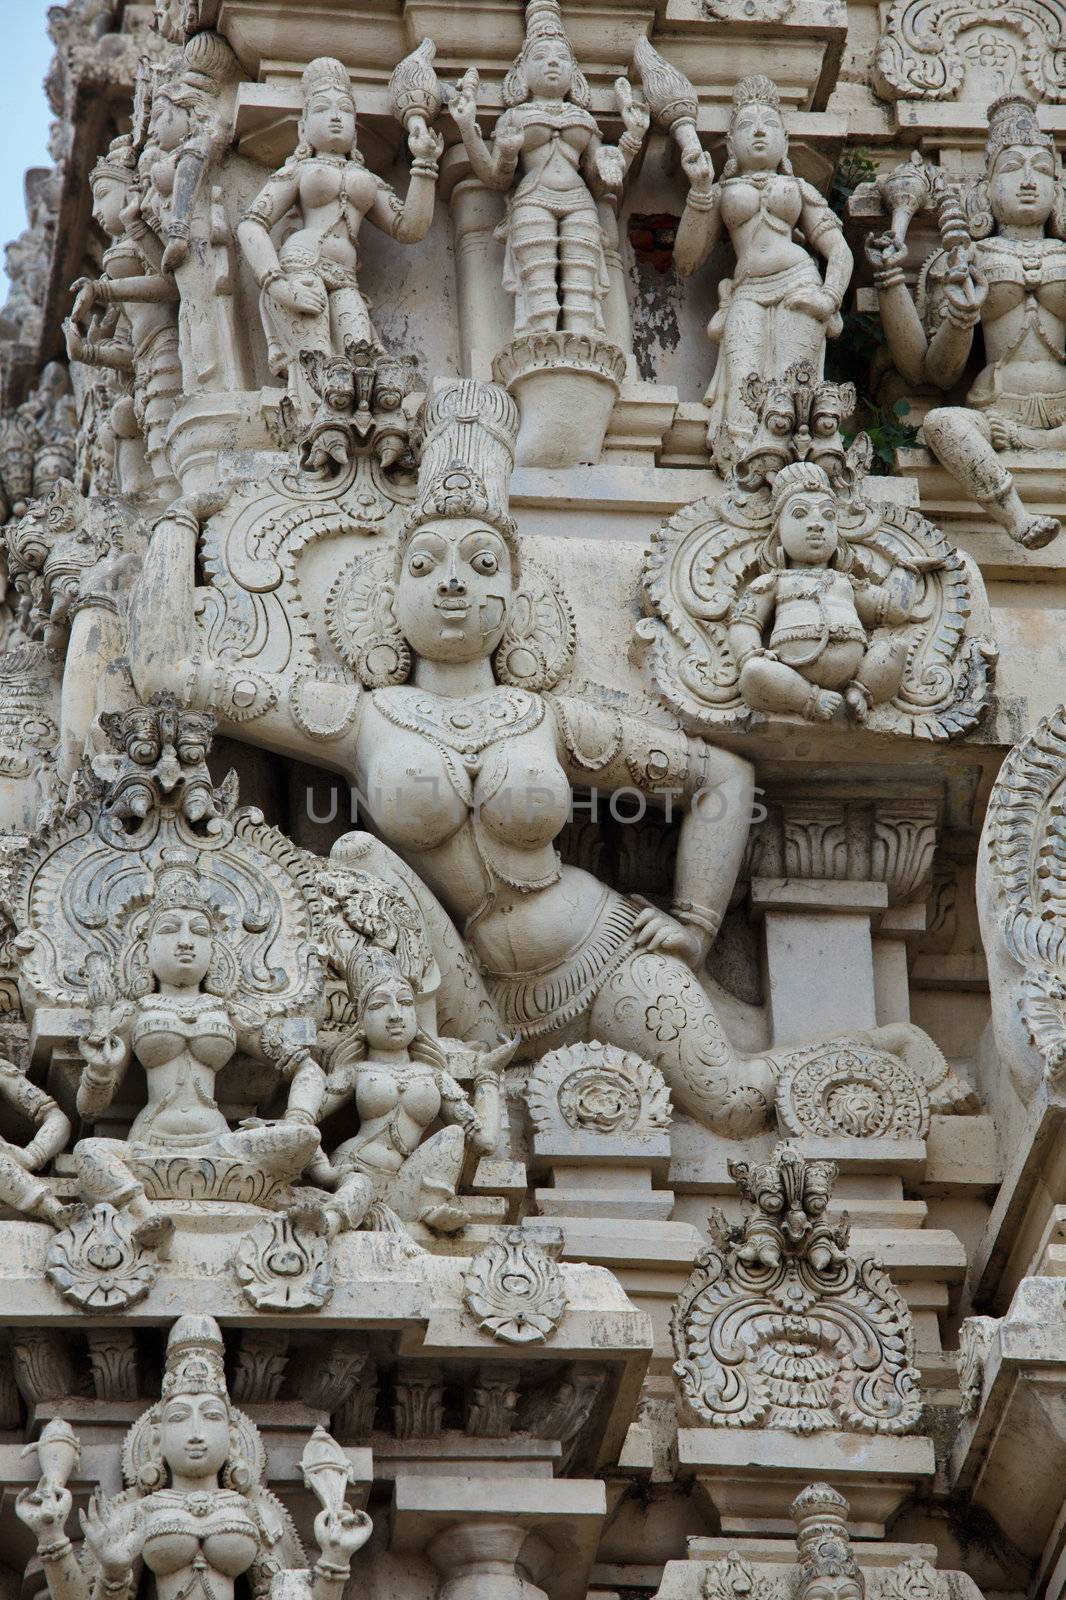 Gopuram (tower) of ancient Hindu temple Kailasanthar. Kanchipuram, Tamil Nadu, India